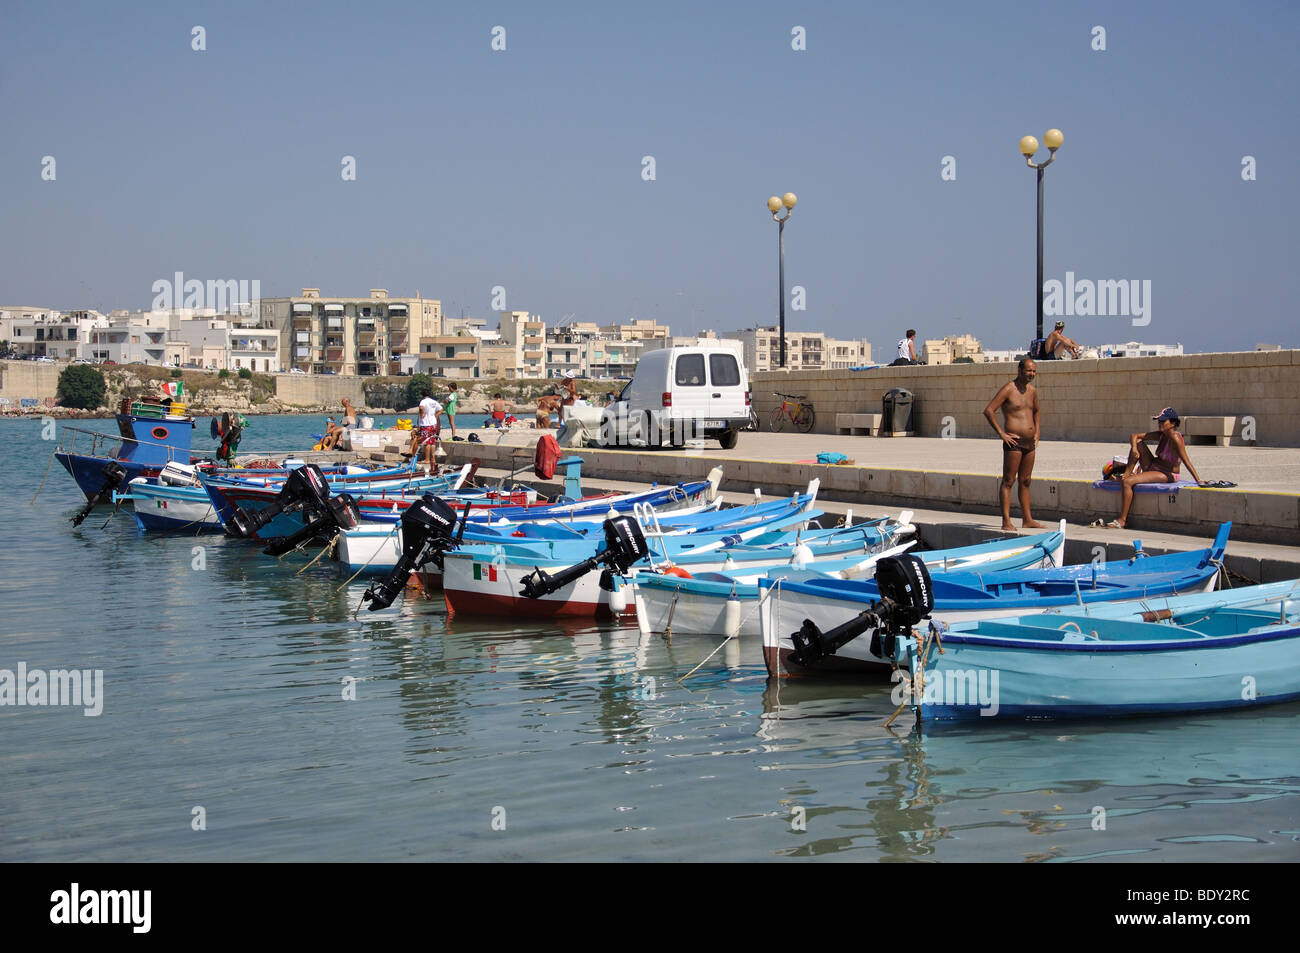 Fishing boats in harbour, Otranto, Lecce Province, Puglia Region, Italy Stock Photo